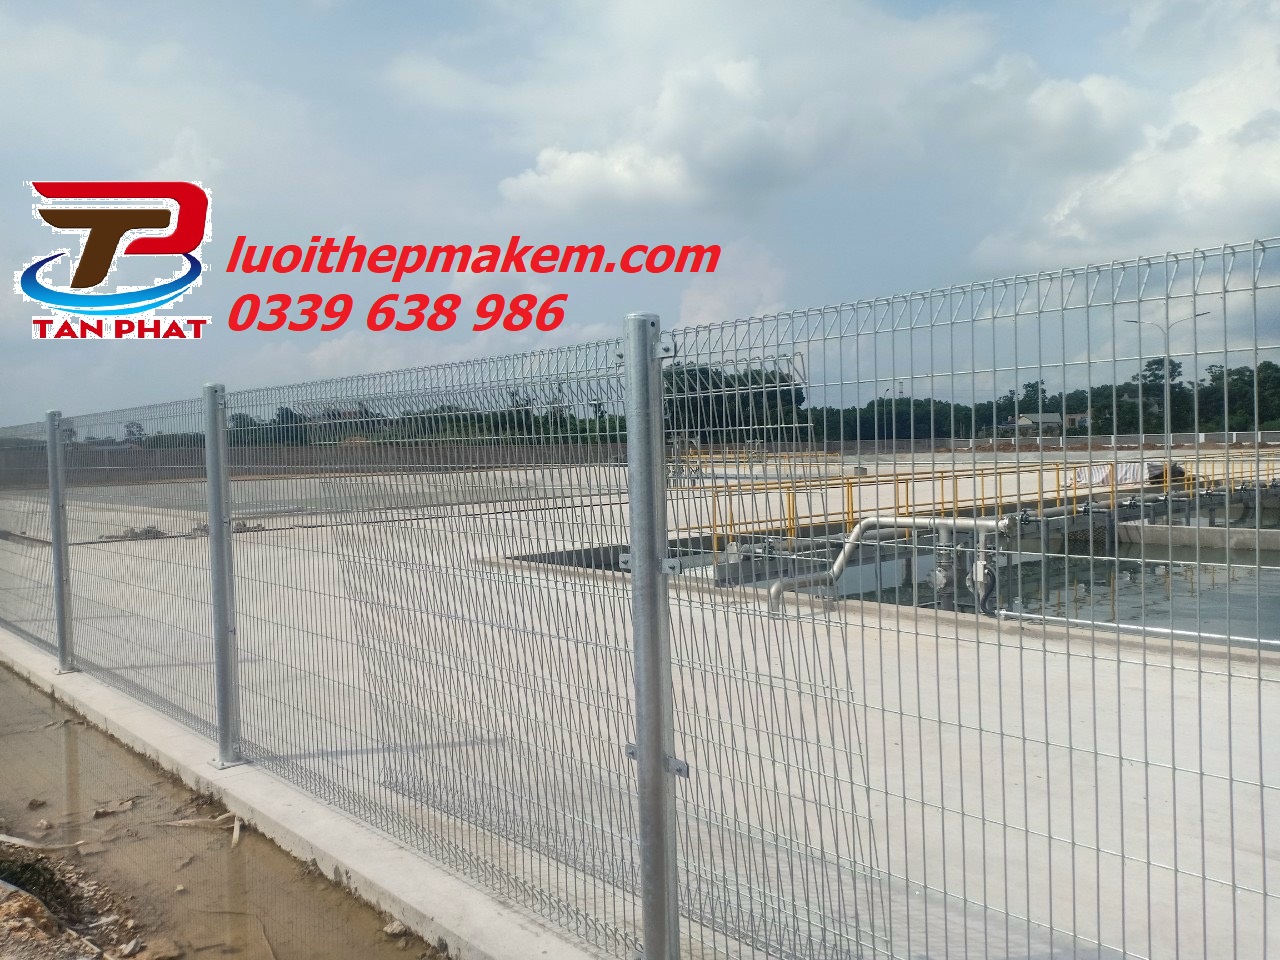 Hàng rào lưới thép: Để bảo vệ sự riêng tư và an toàn, hãy sử dụng hàng rào lưới thép chắc chắn. Có nhiều lựa chọn về hình dạng, màu sắc và kích thước cho bạn tha hồ lựa chọn.